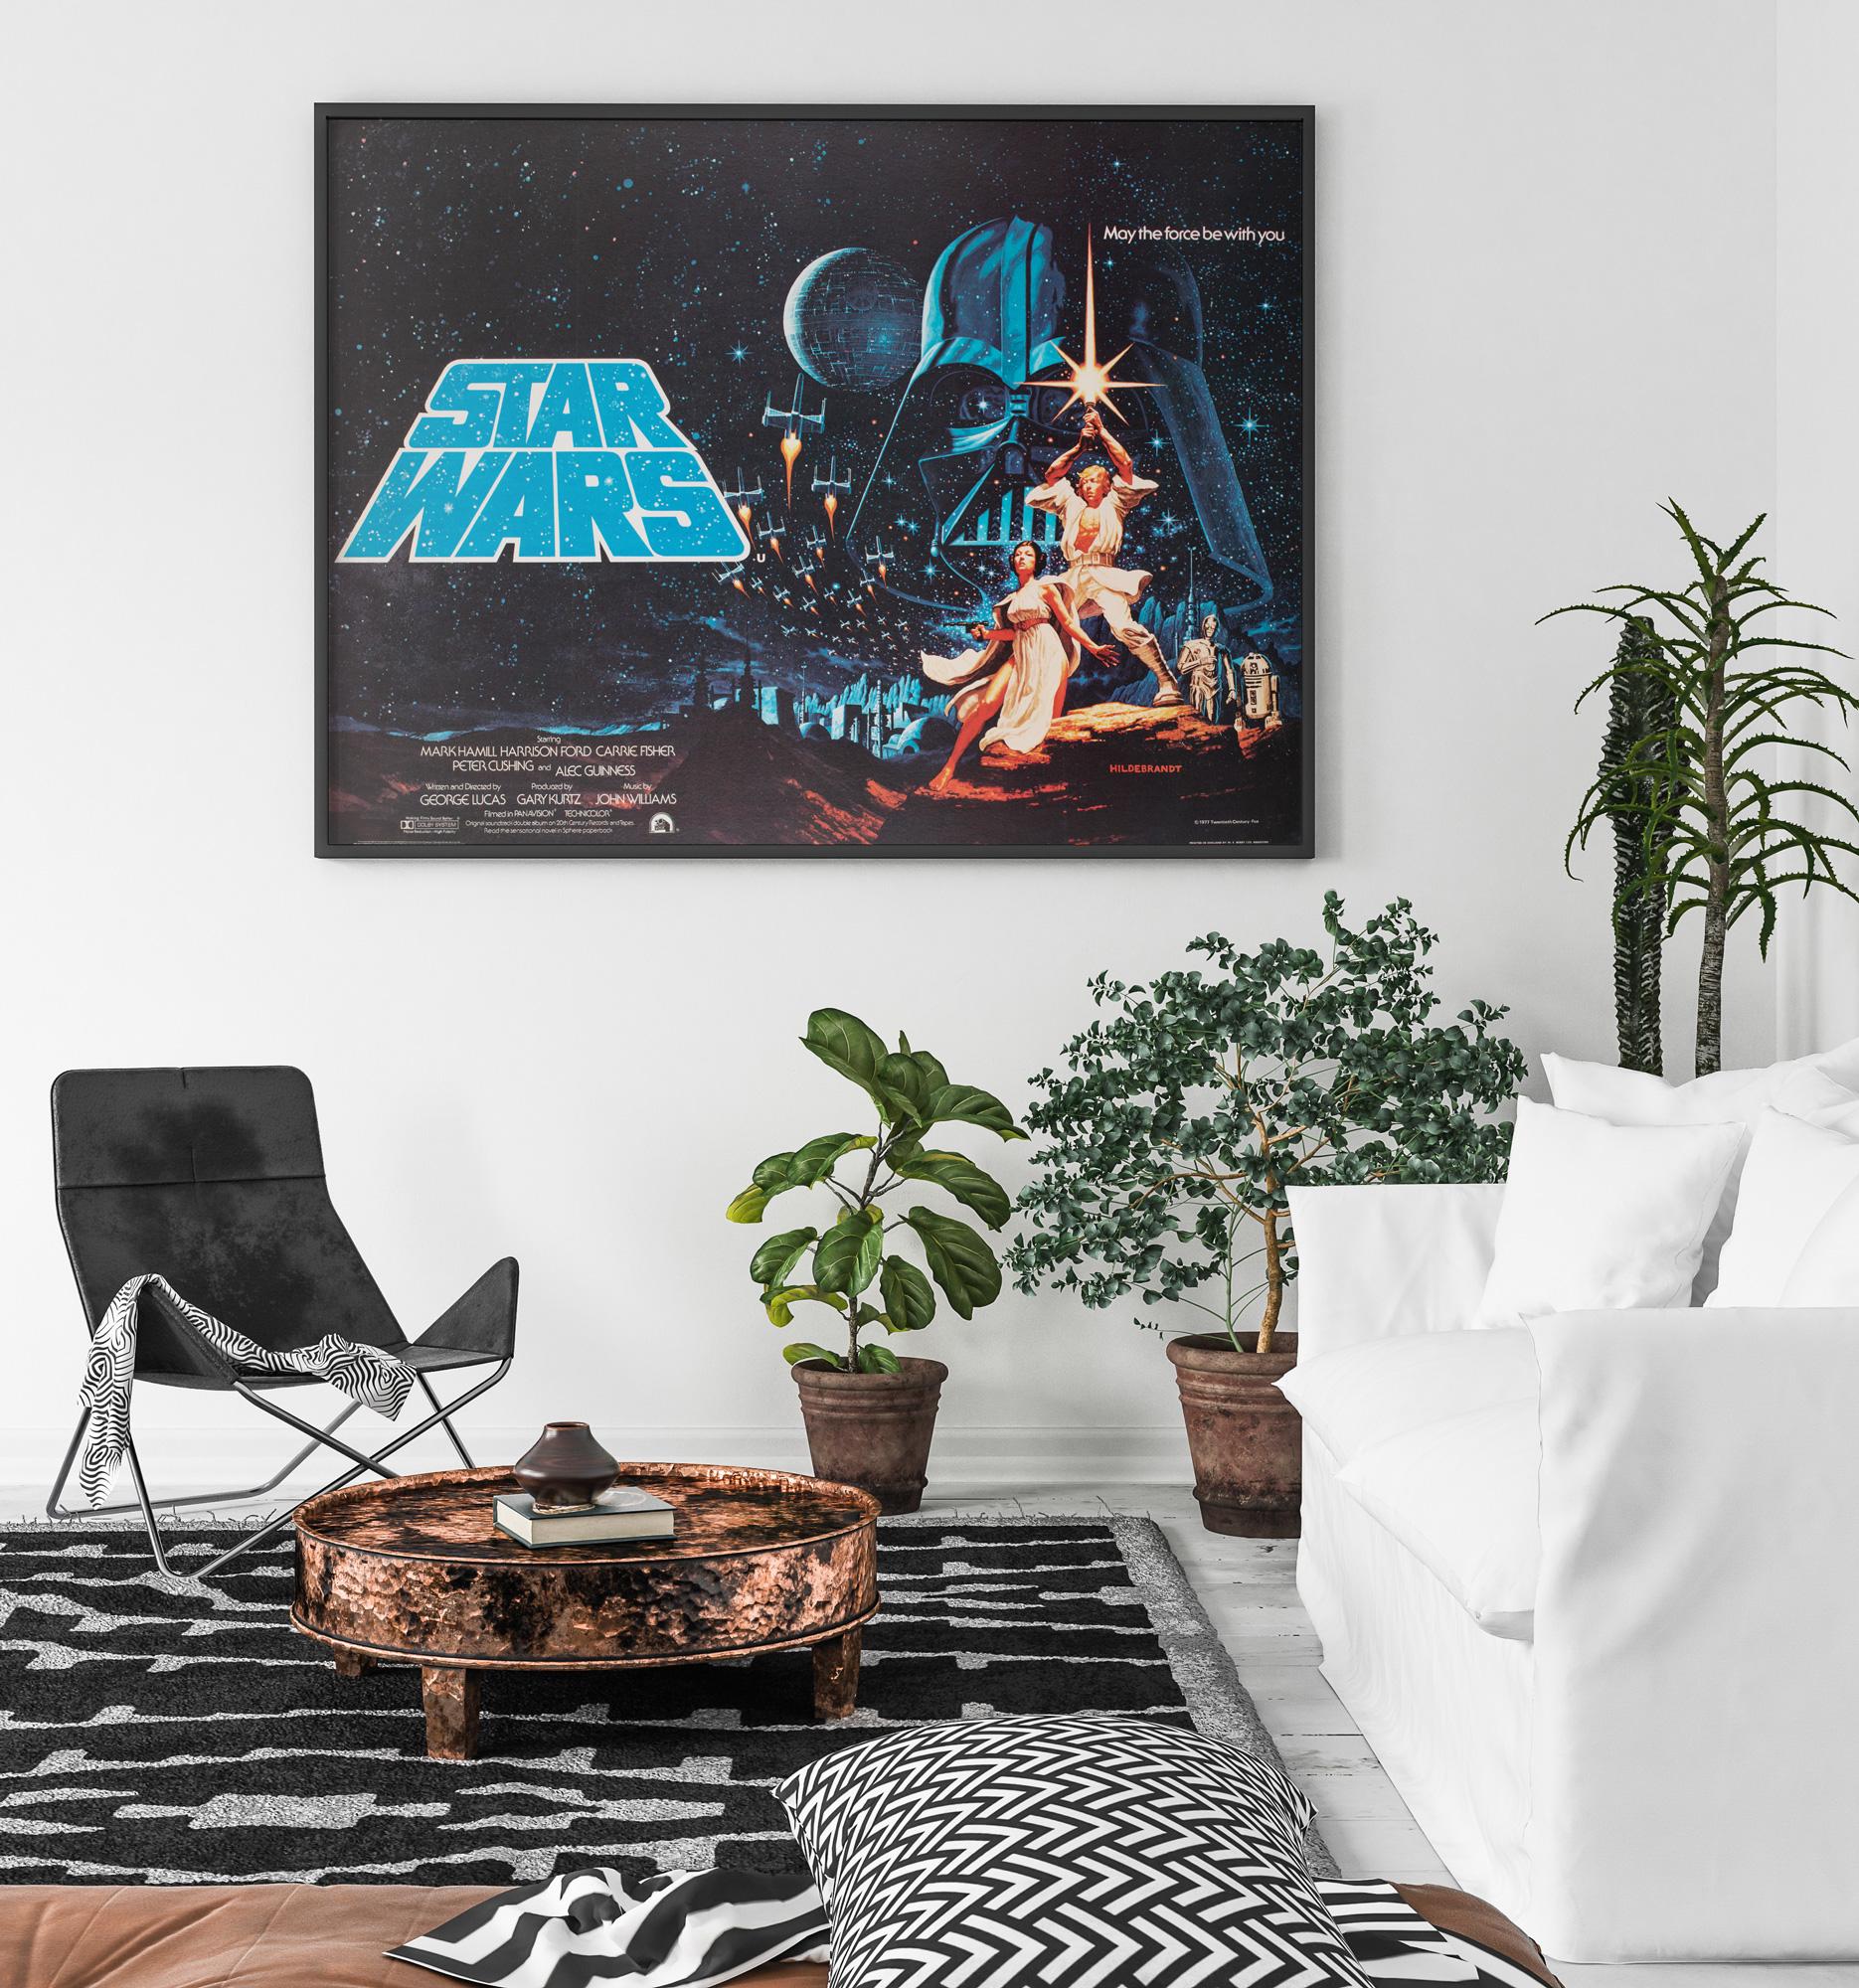 Eines der seltensten Star Wars-Plakate und von vielen begeisterten Sammlern als der Heilige Gral angesehen, ist das Original Hildebrandt British Quad Filmplakat (auch bekannt als Style B Design).

1977 traten Greg und Tim Hildebrandt an 20th Century